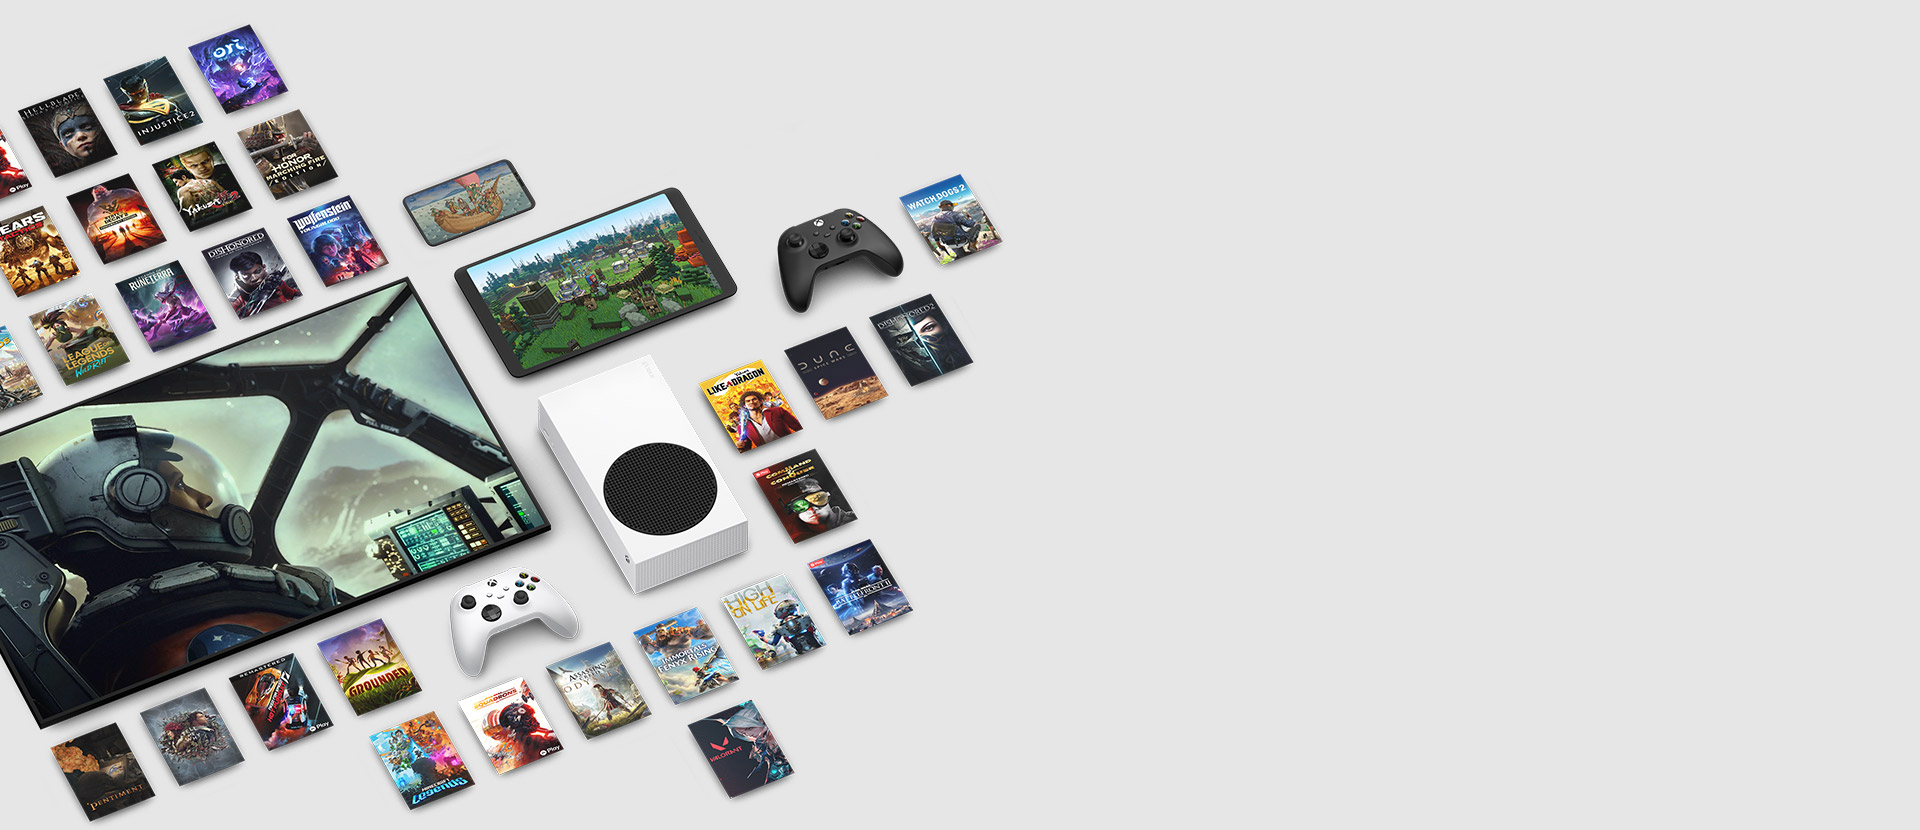 Arte de vários jogos disponíveis agora com o Xbox Game Pass Ultimate ao redor de vários dispositivos, incluindo um console, celular, tablet, Smart TV e controles.